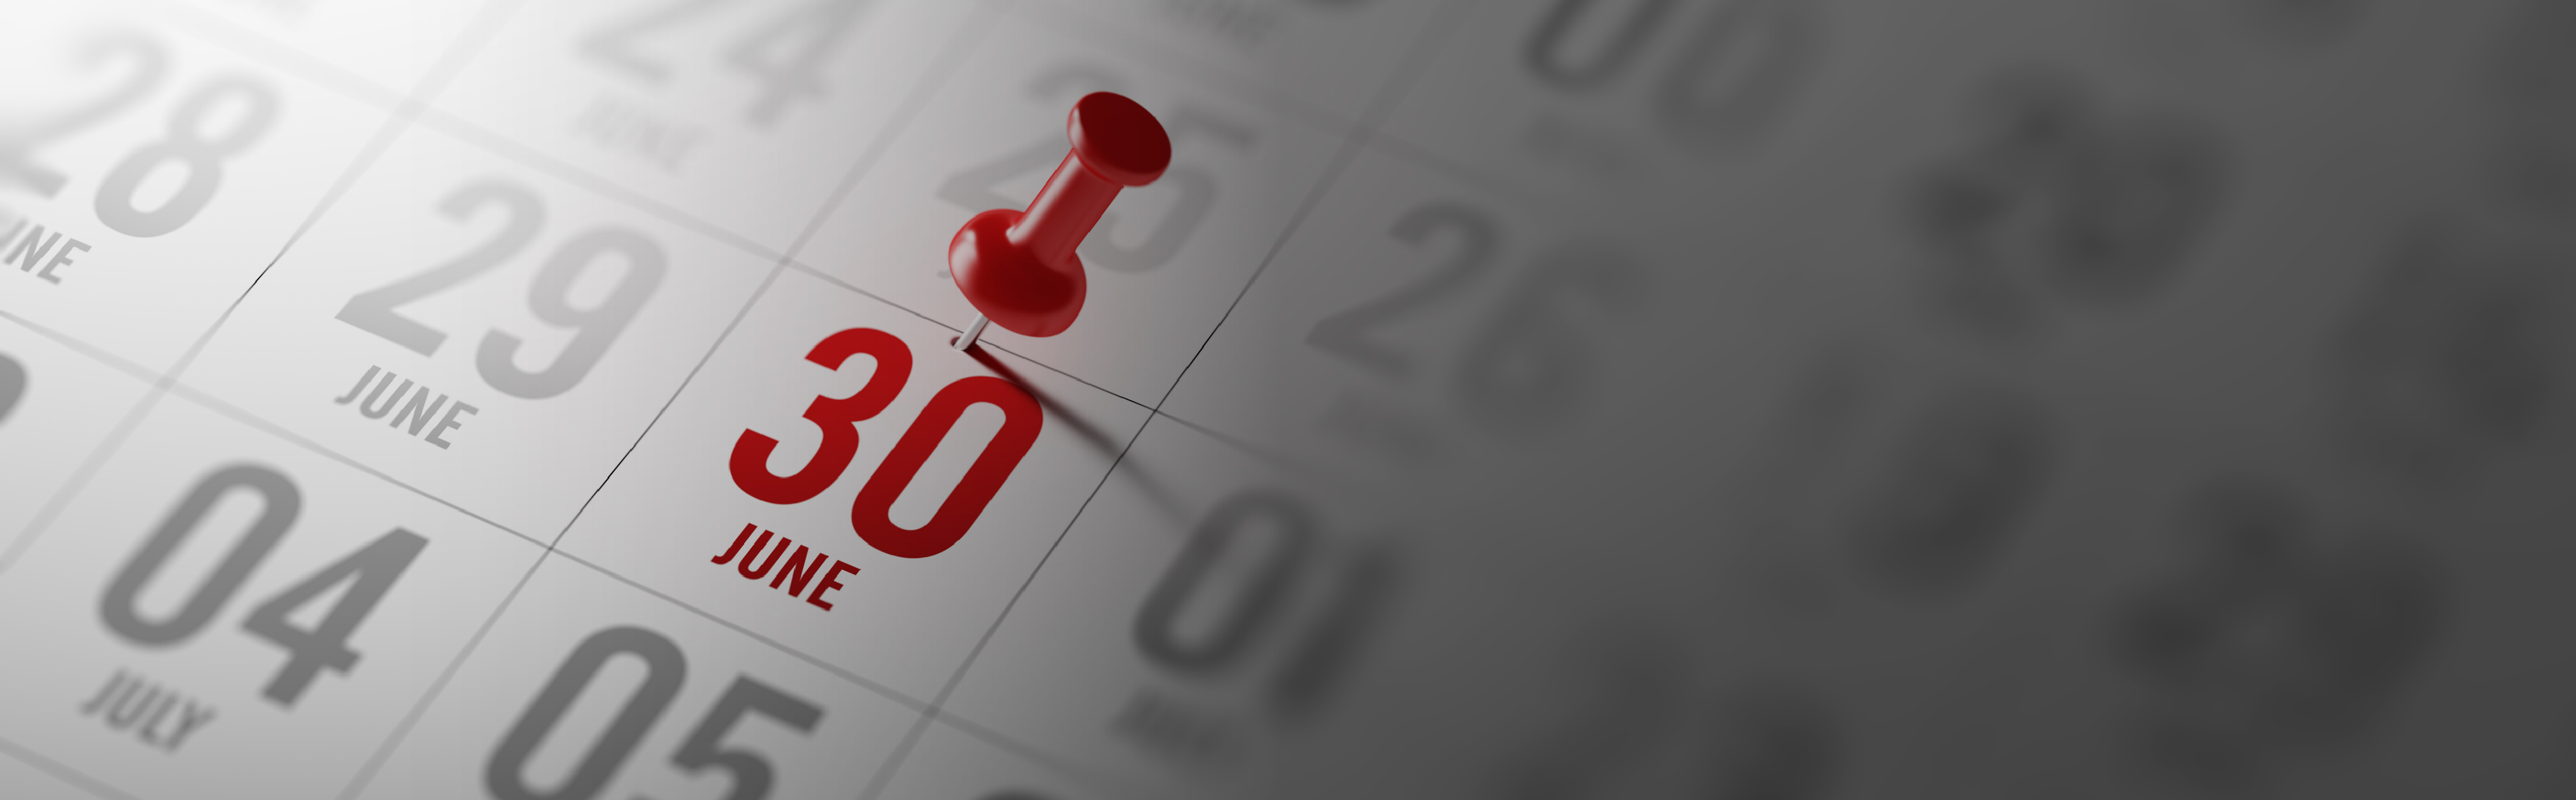 immagine che raffigura una puntina da disegno rossa che fissa la data del 30 giugno in colore rosso su un calendario 